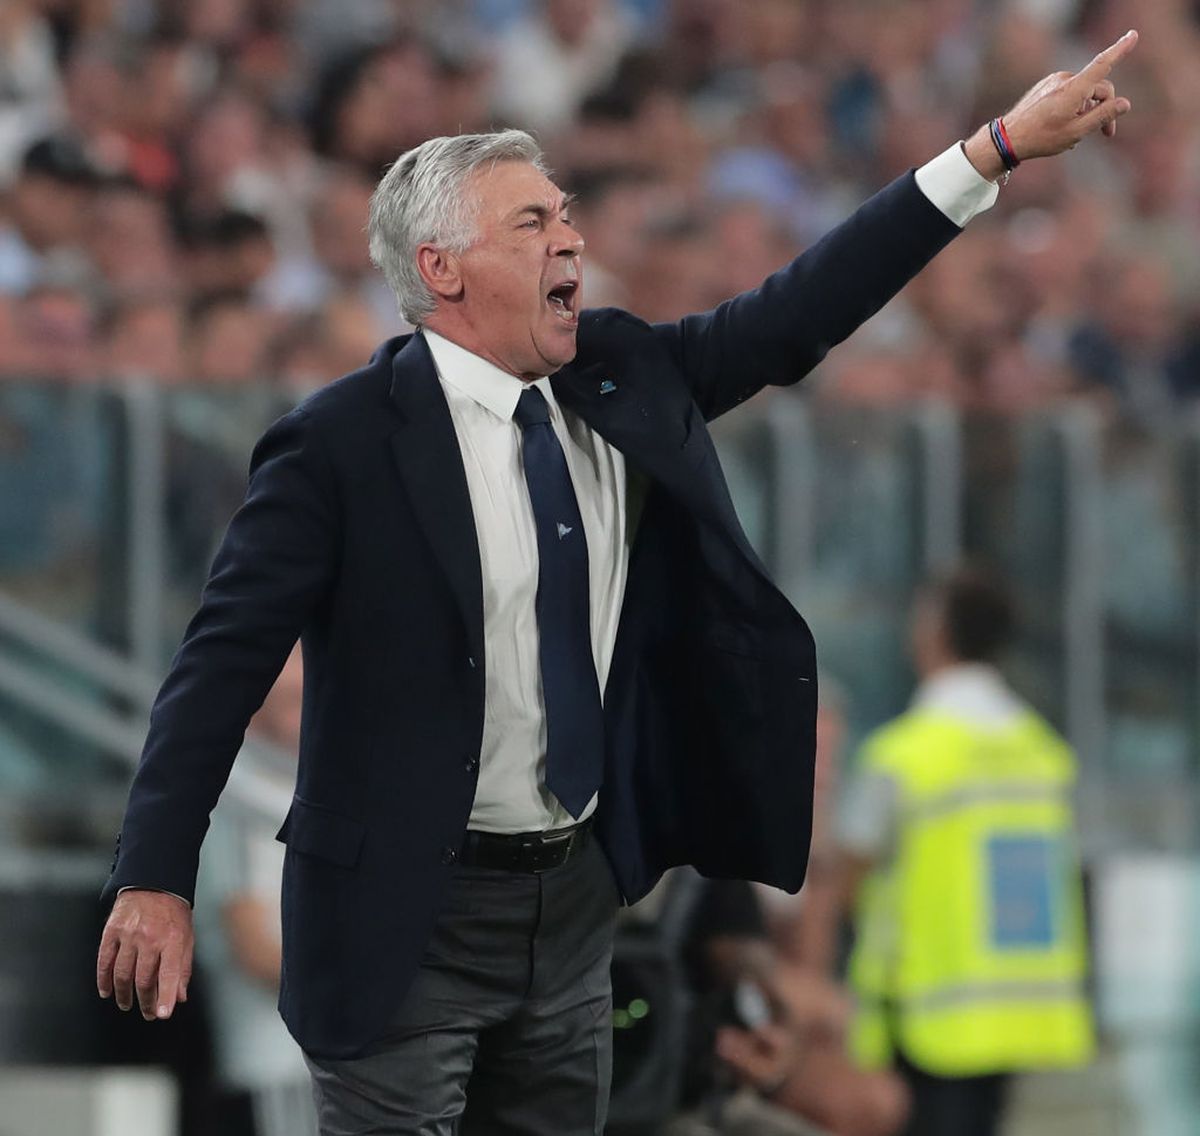 Boicot! Napoli nu vrea să joace Supercupa Italiei cu Juventus! Care e motivul invocat